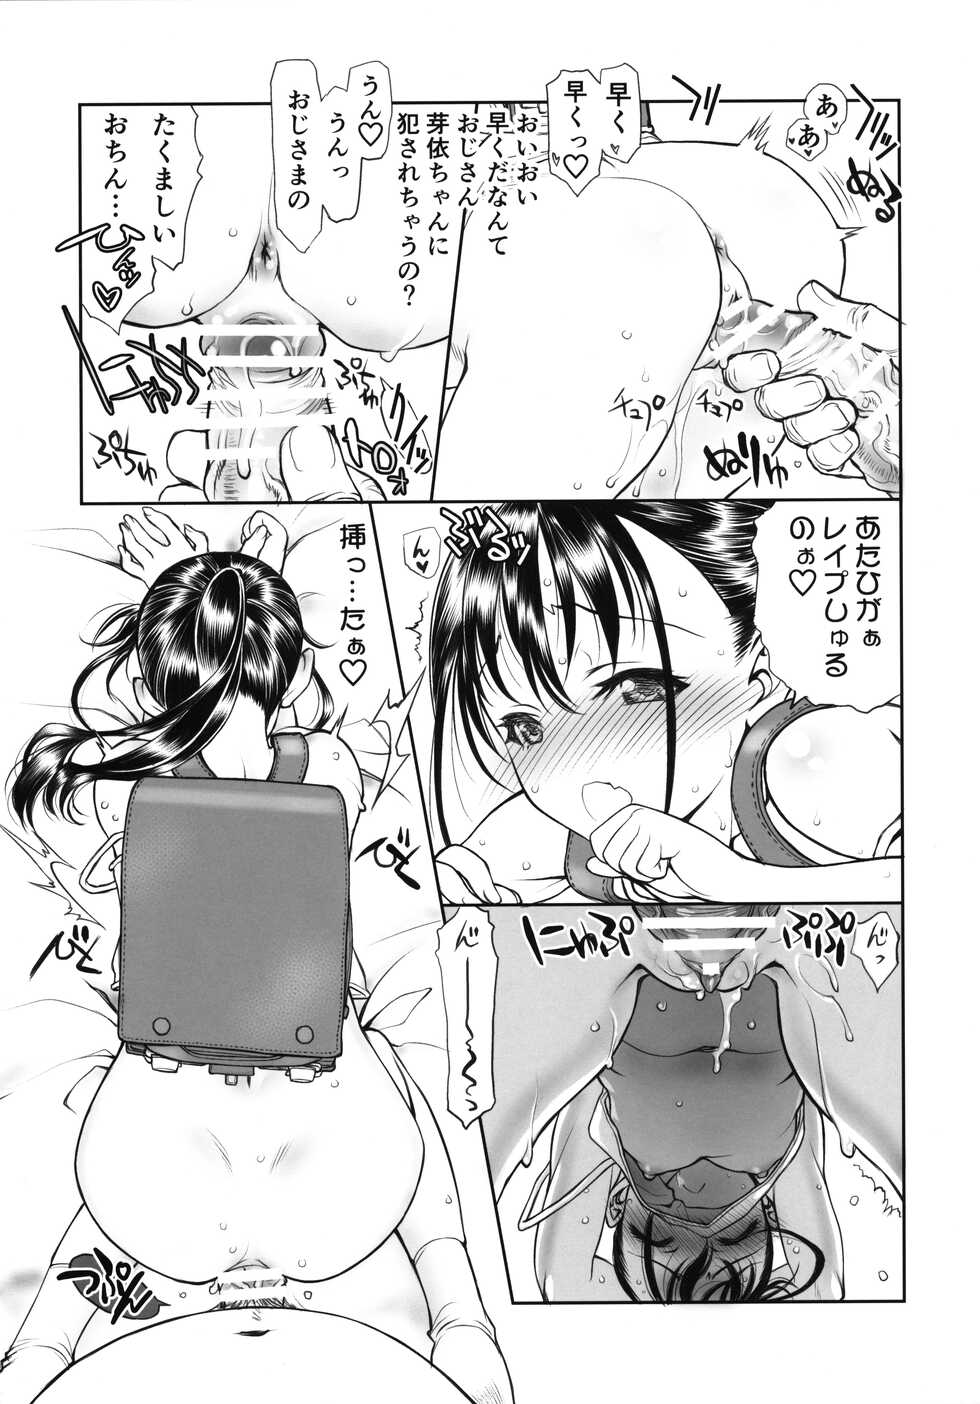 [UROBOROS (Utatane Hiroyuki)] Randoseru Girl - Page 7